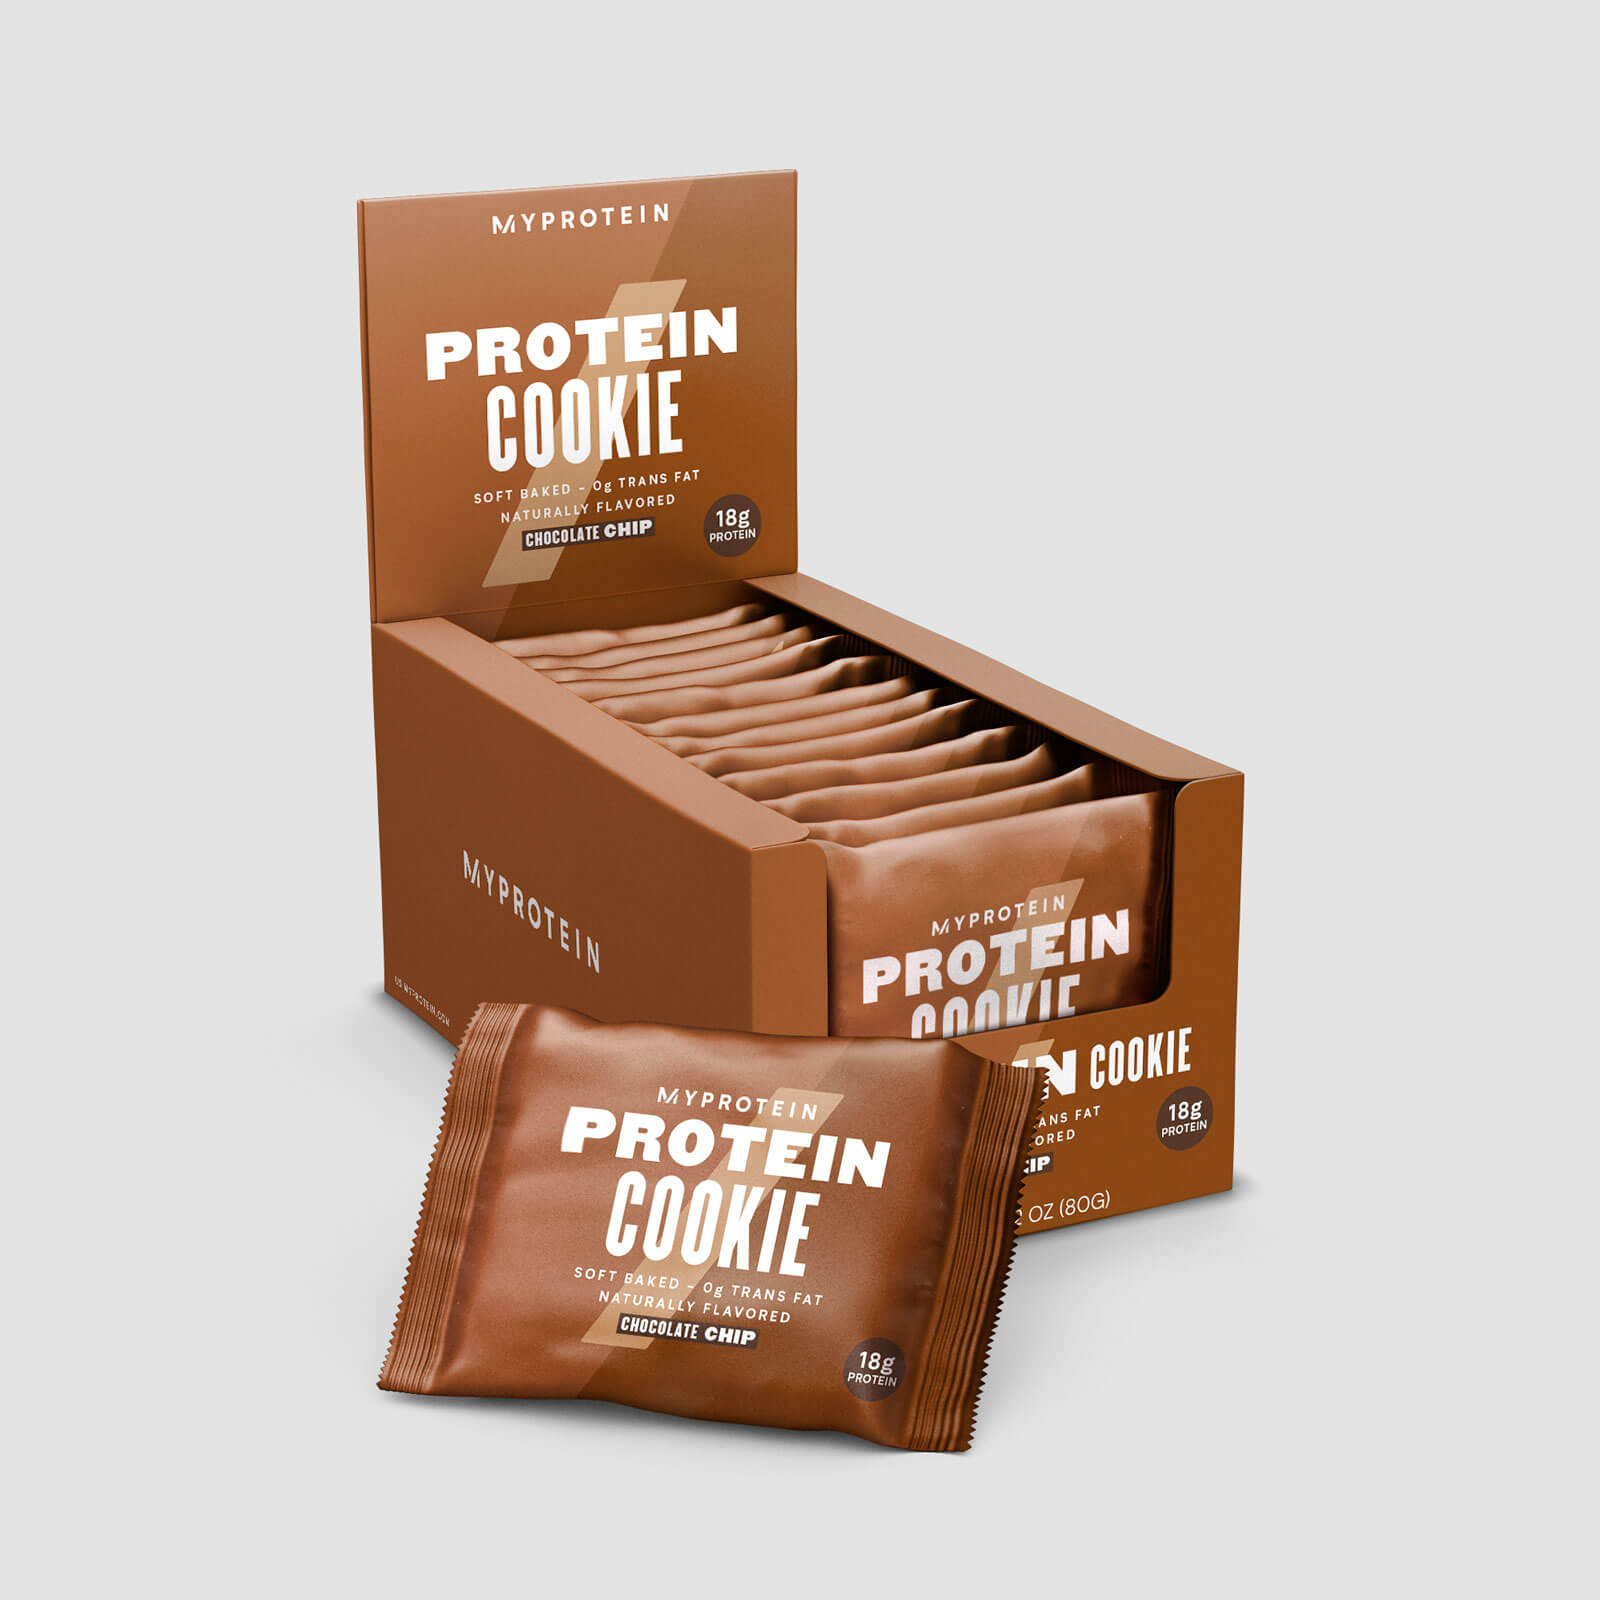 Myprotein Protein Cookie V2, 12 x 2.82 Oz (USA)